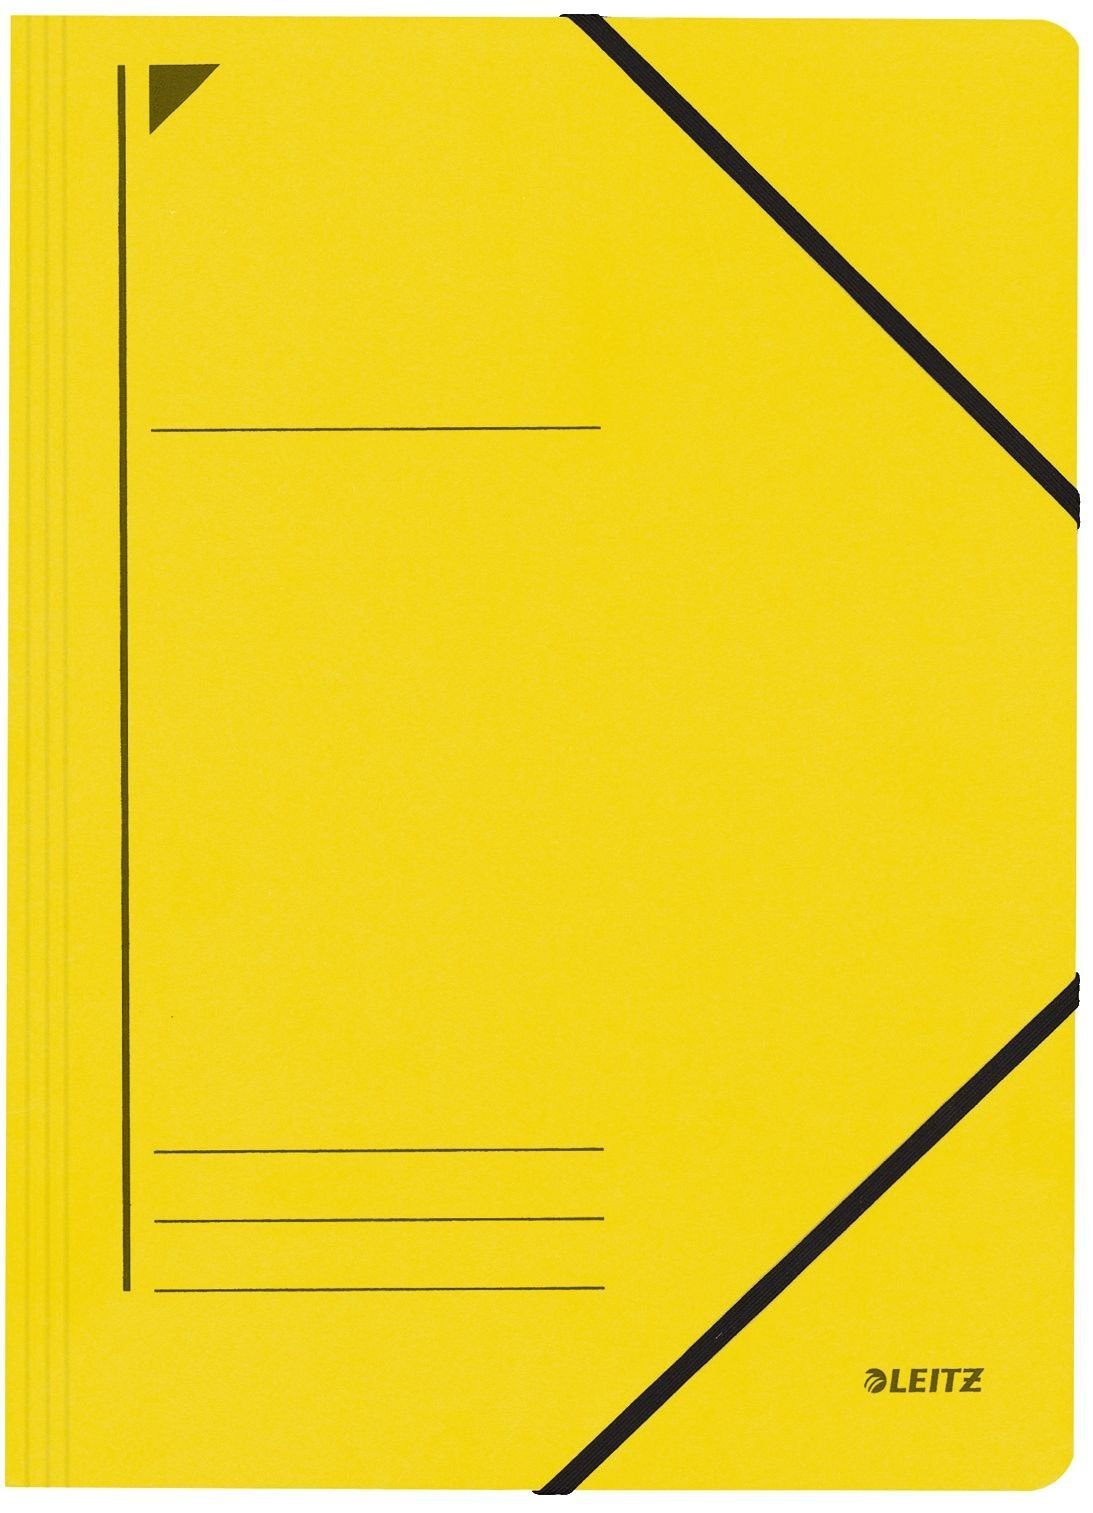 LEITZ Schreibmappe LEITZ Eckspannermappe, DIN gelb A4, g/qm, 450 Karton